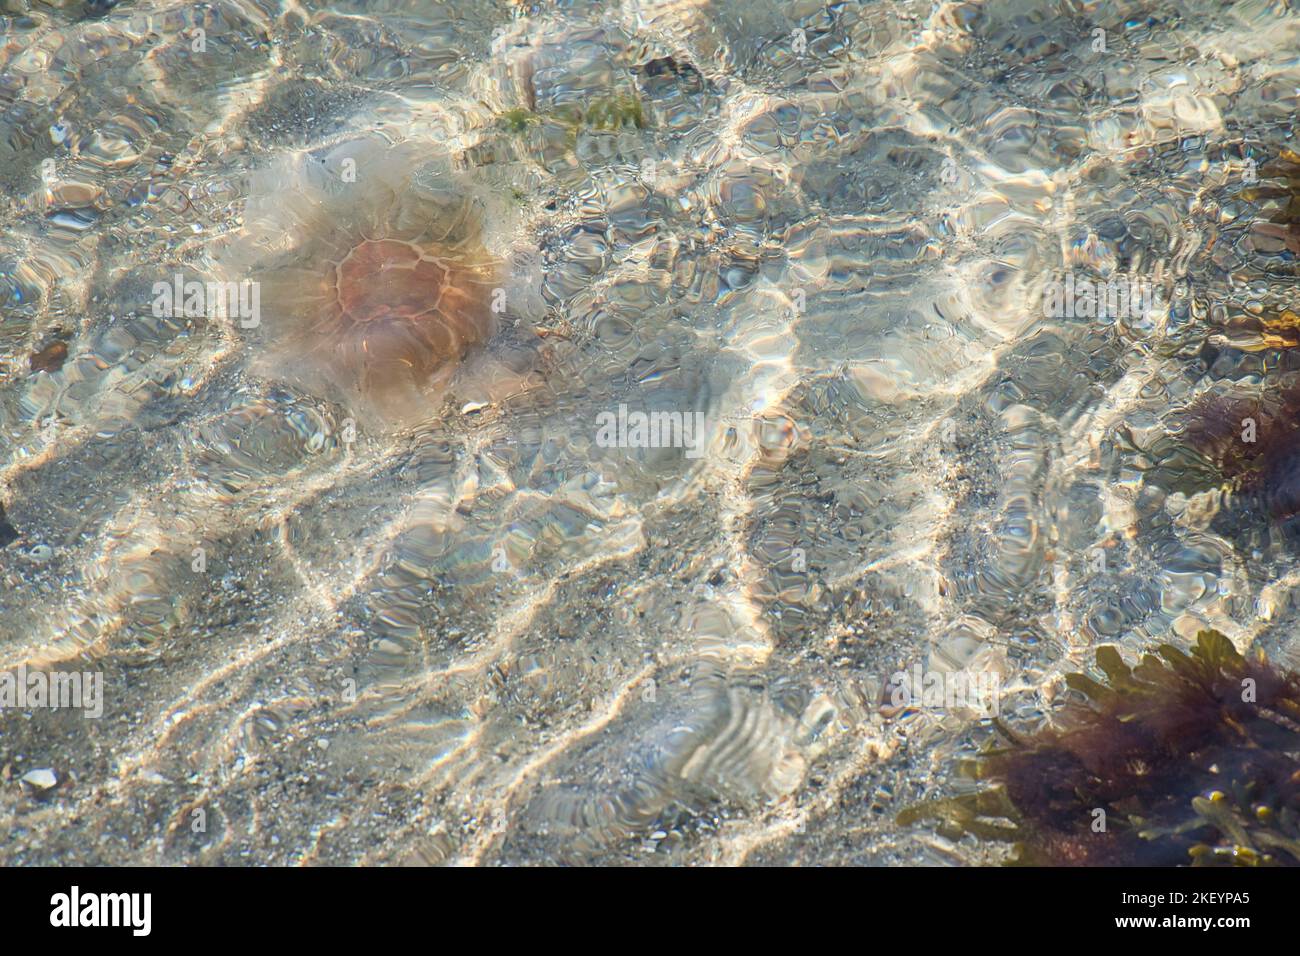 Pompez de la méduse sur la côte en nageant dans l'eau salée. Poncer en arrière-plan dans le motif vagues. Photo d'animal de la nature Banque D'Images